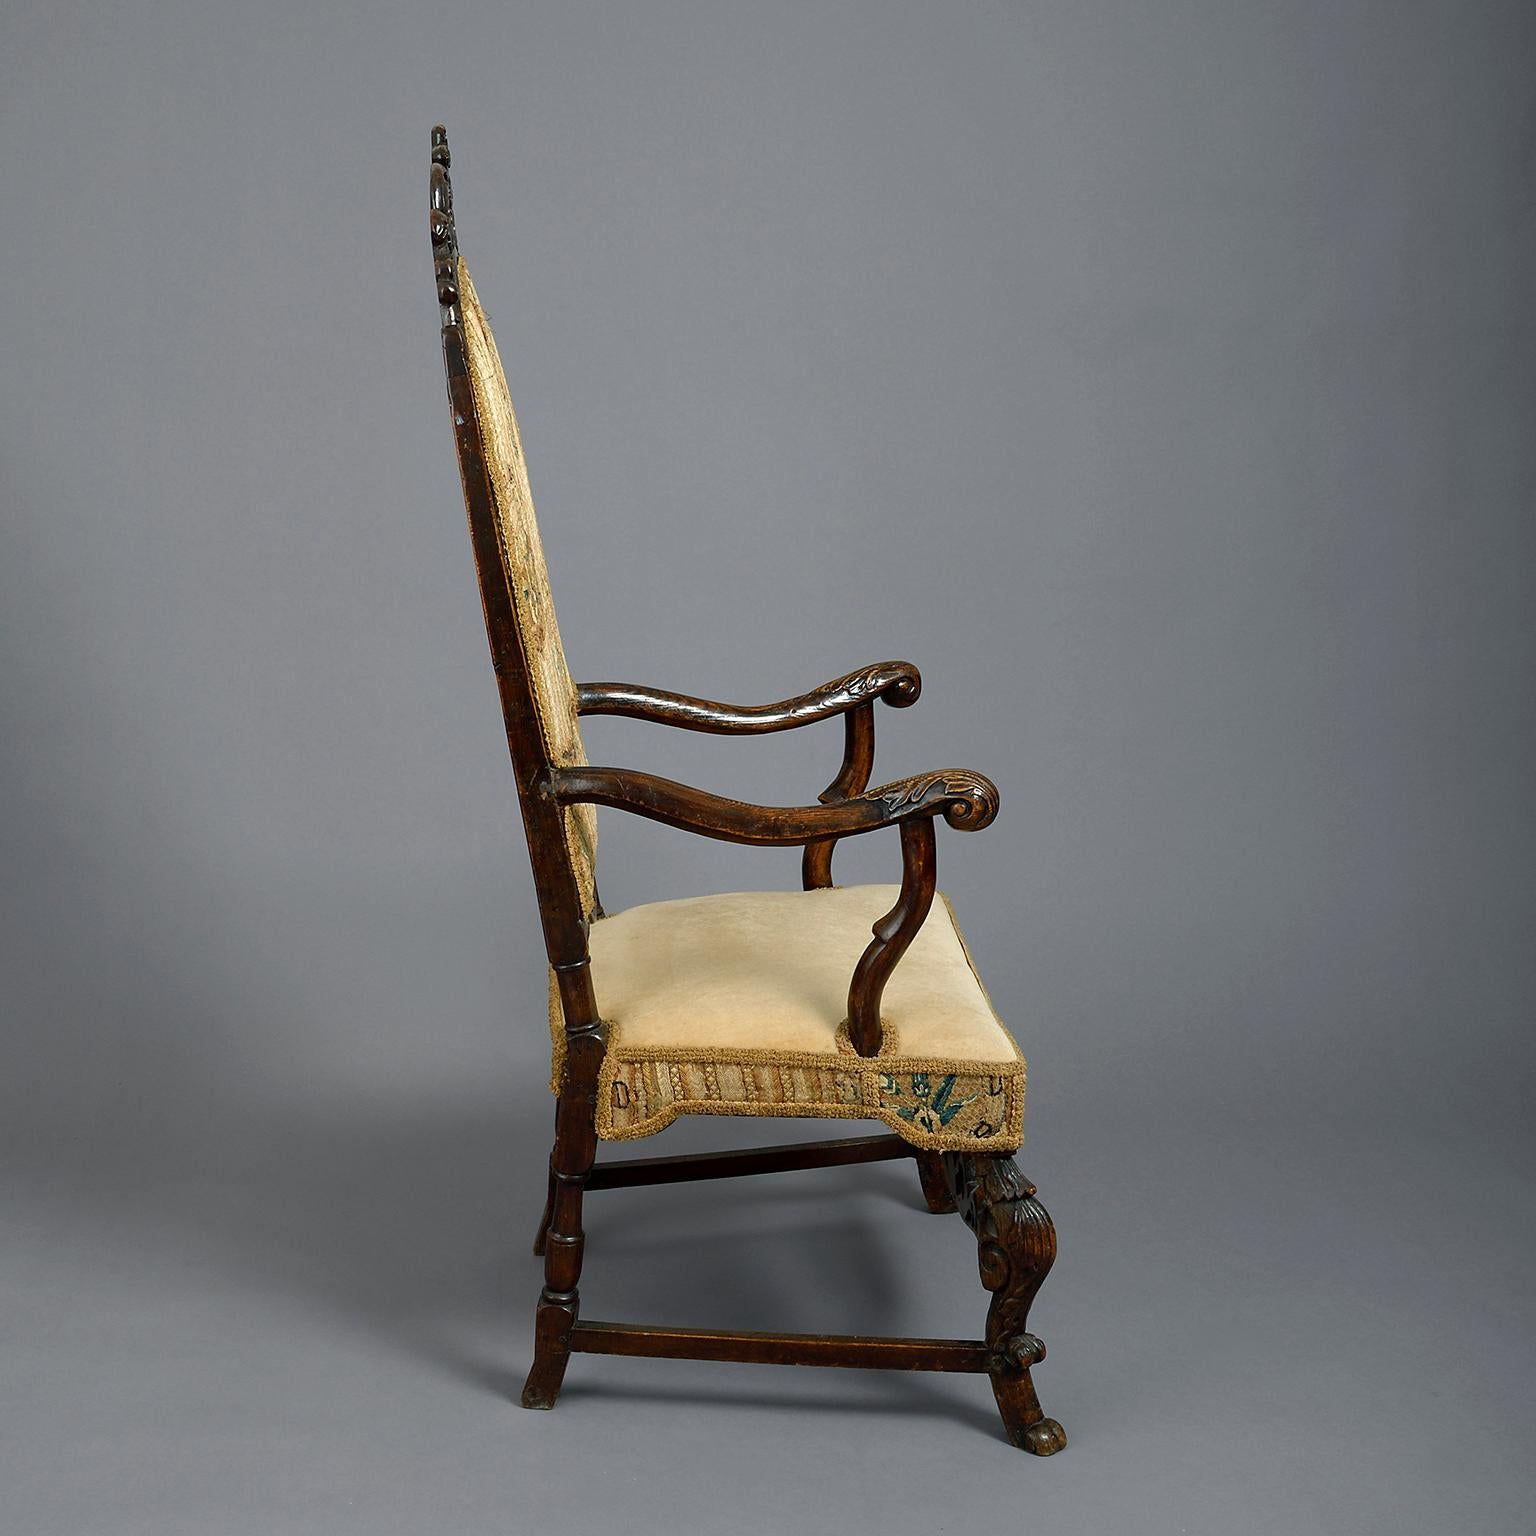 Niederländischer Sessel aus dem 17. Jahrhundert, hohe gepolsterte Rückenlehne mit Lambrequin- und Scrollkamm, mit nach außen gebogenen Armen, gepolsterter Sitzfläche und Cabriole-Beinen, die durch eine ebenfalls geschnitzte Bahre verbunden sind;